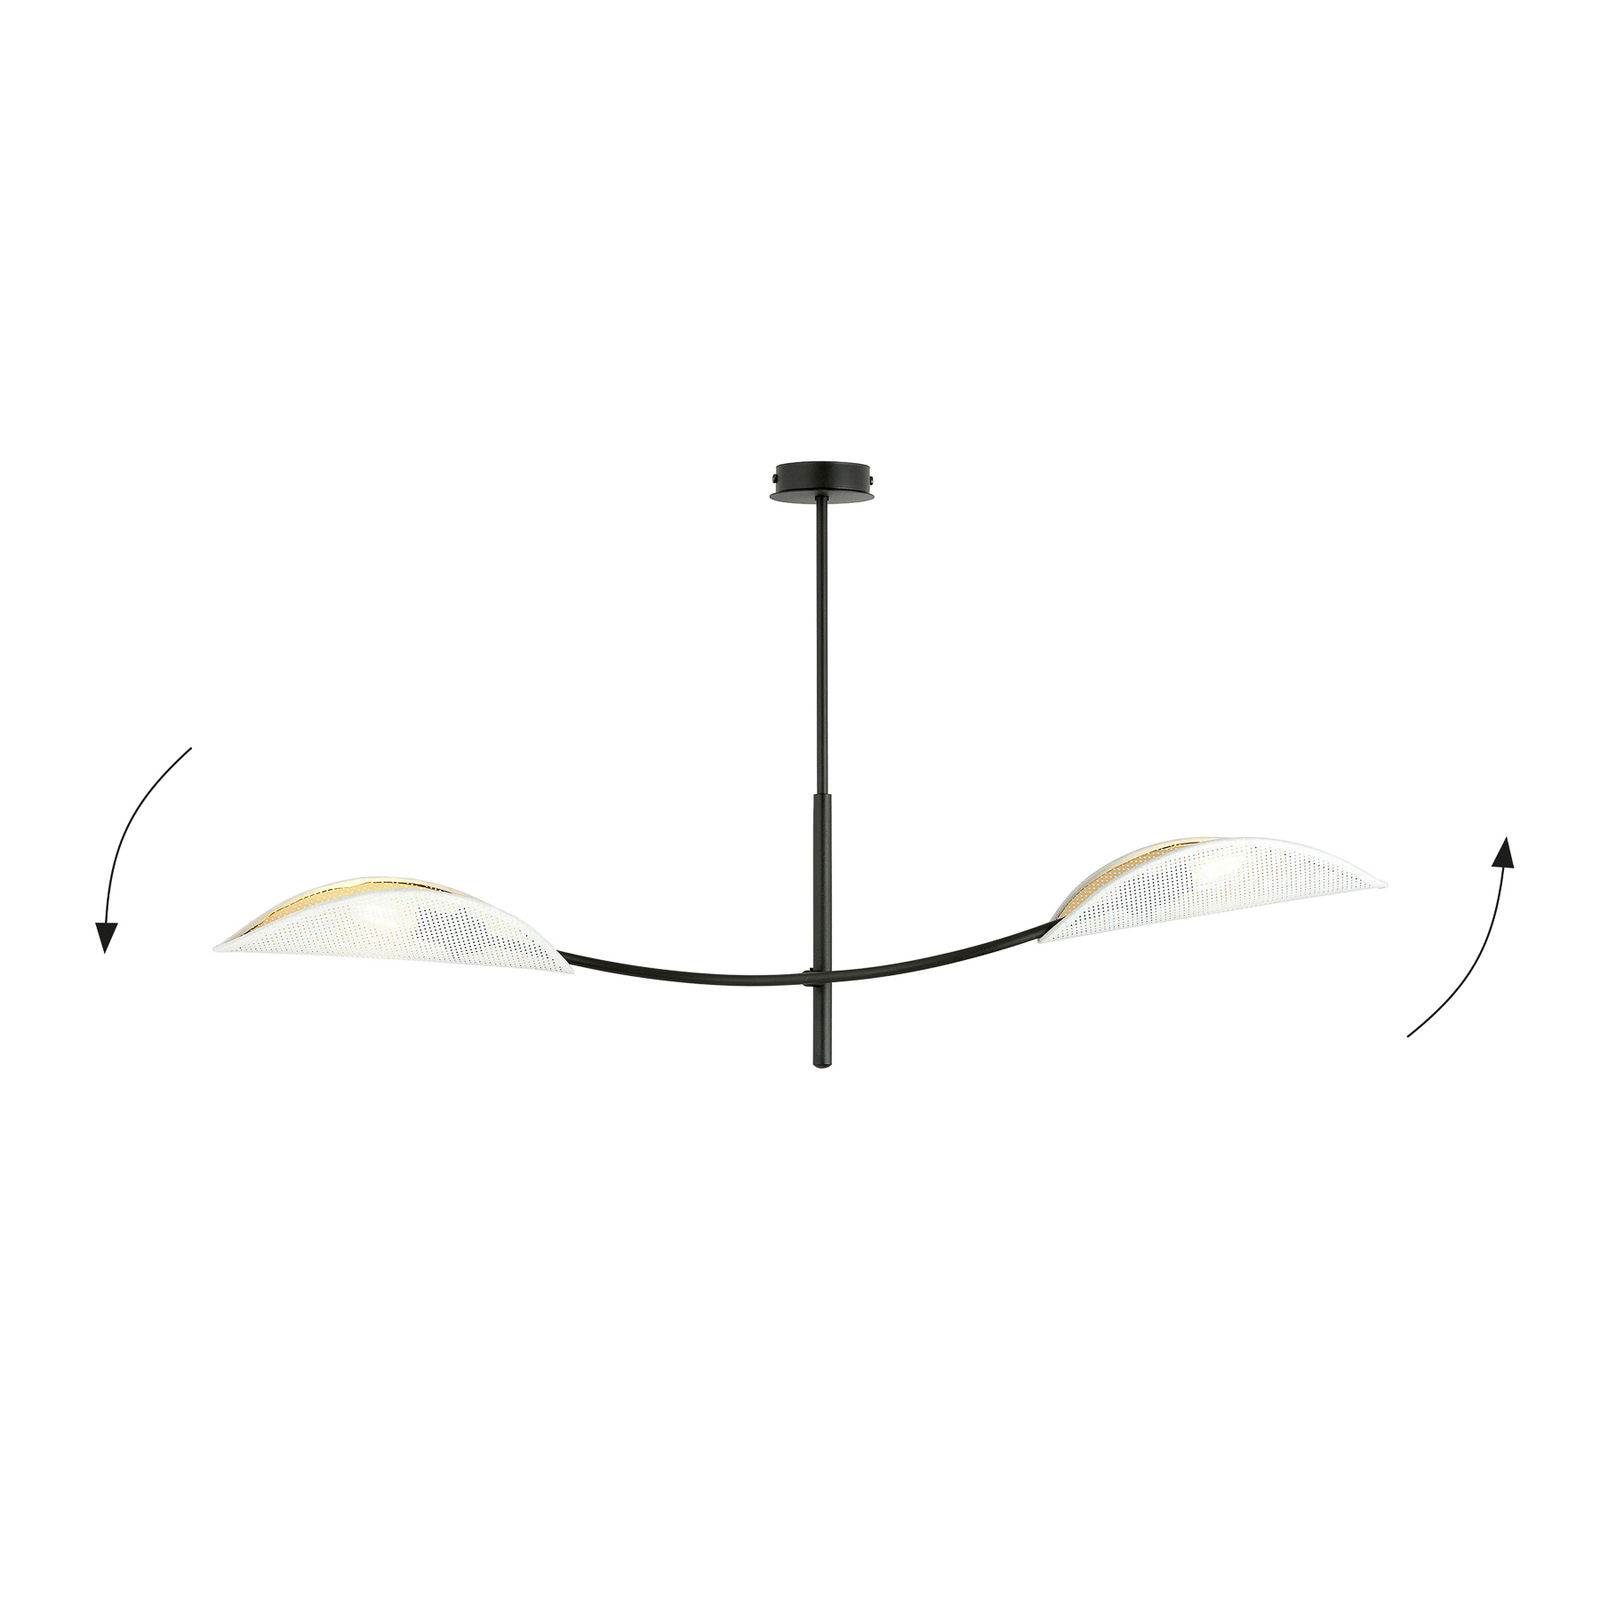 Deckenlampe Lotus, schwarz/weiß/gold, 2-flammig